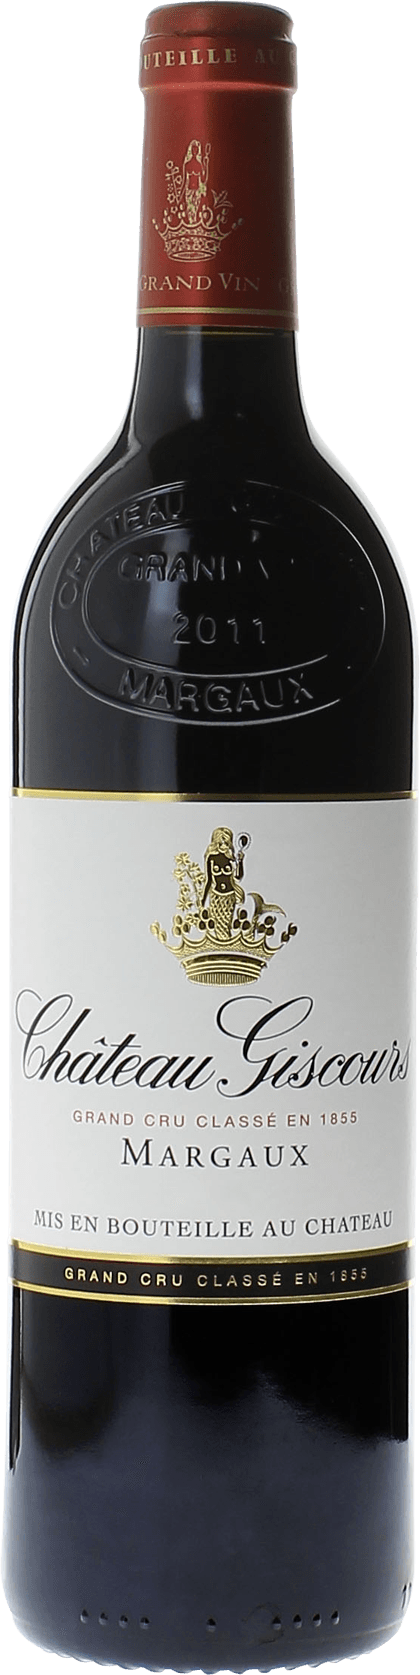 Giscours 2017 3me Grand cru class Margaux, Bordeaux rouge